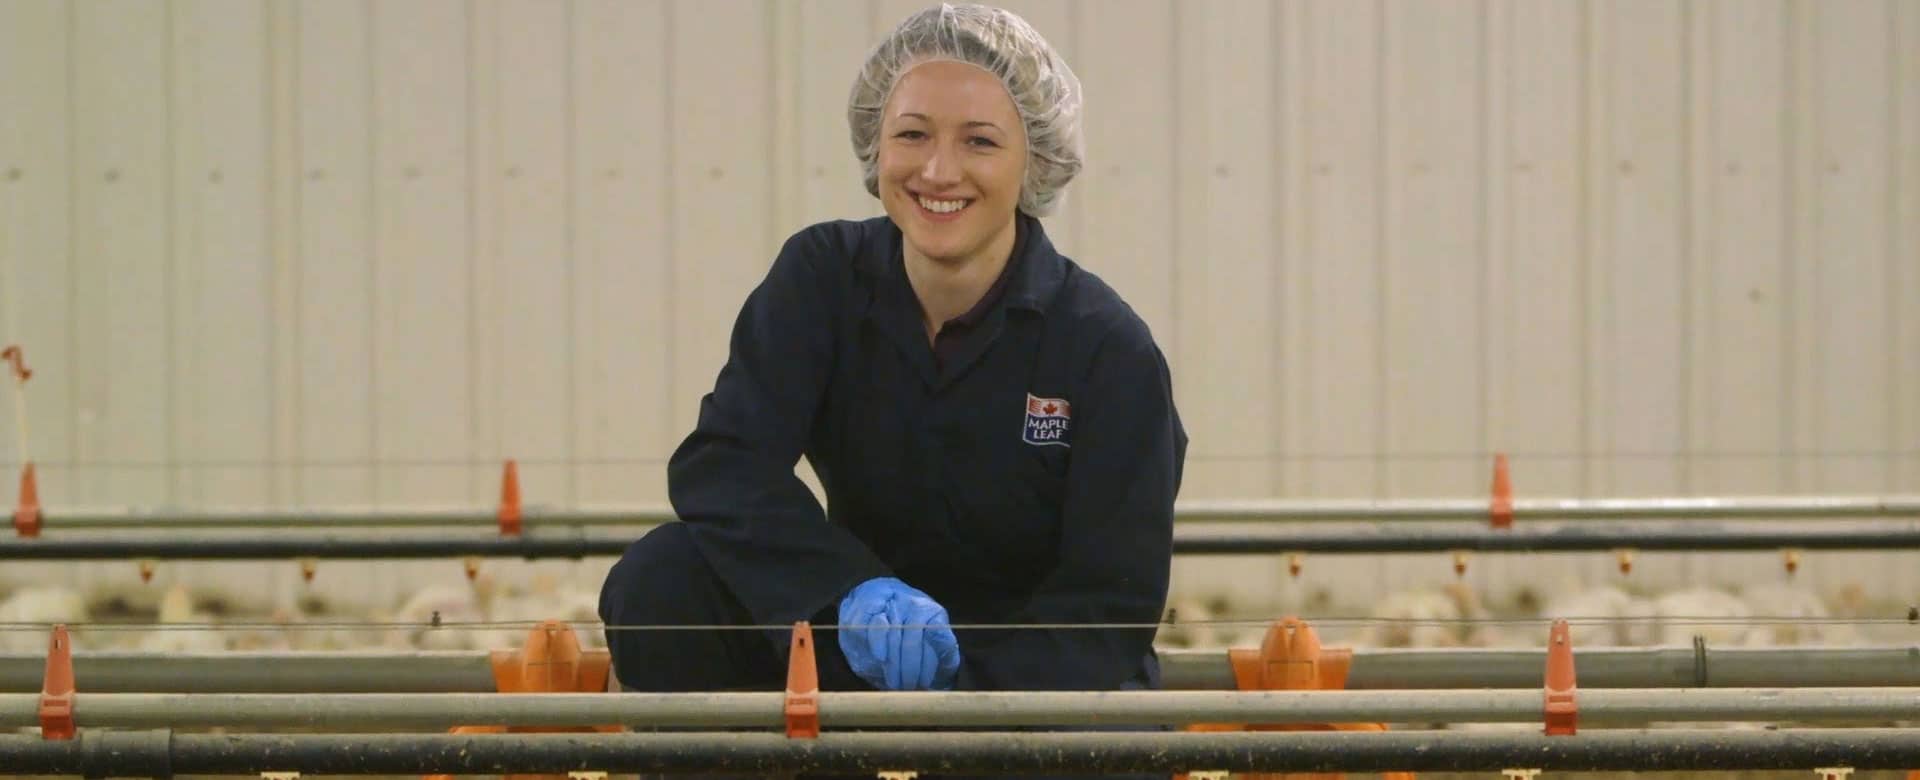 Kathleen Long, VP of Animal Care inside a poultry barn